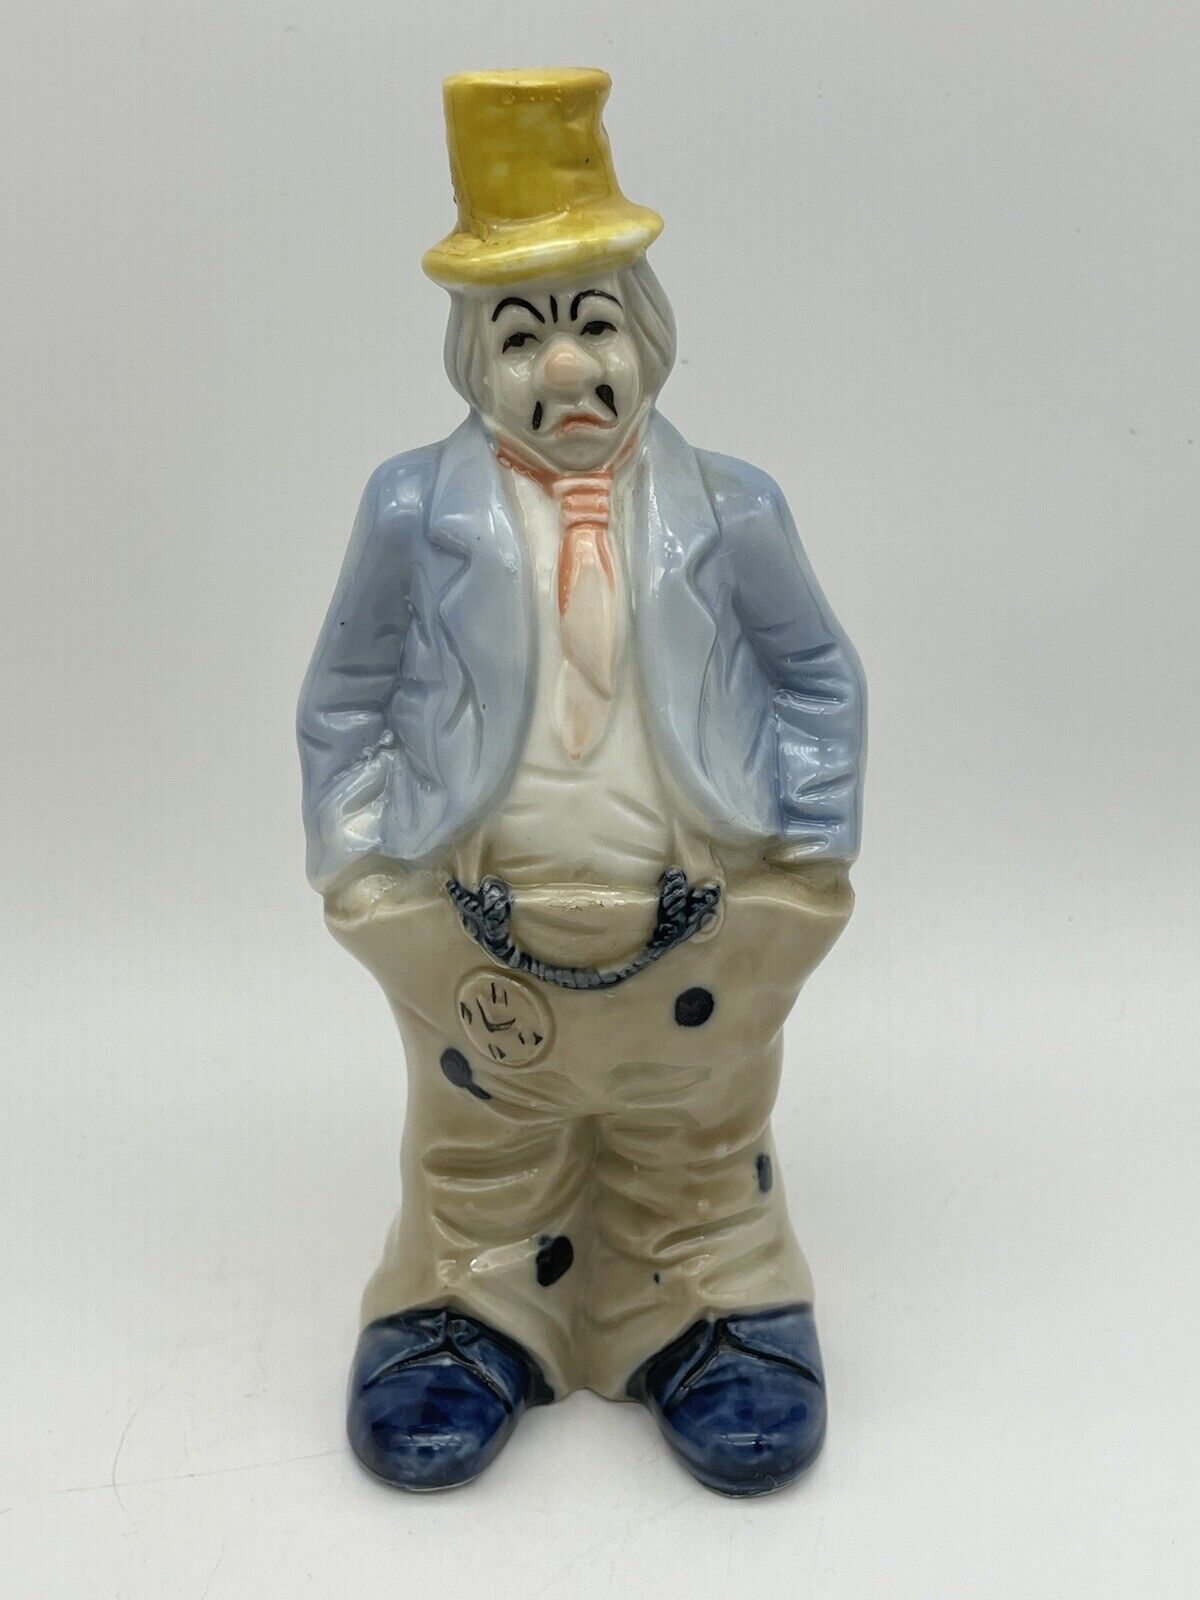 VTG 7” Porcelain Sad Faced Clown Wearing Top Hat & a Large Pocket Watch